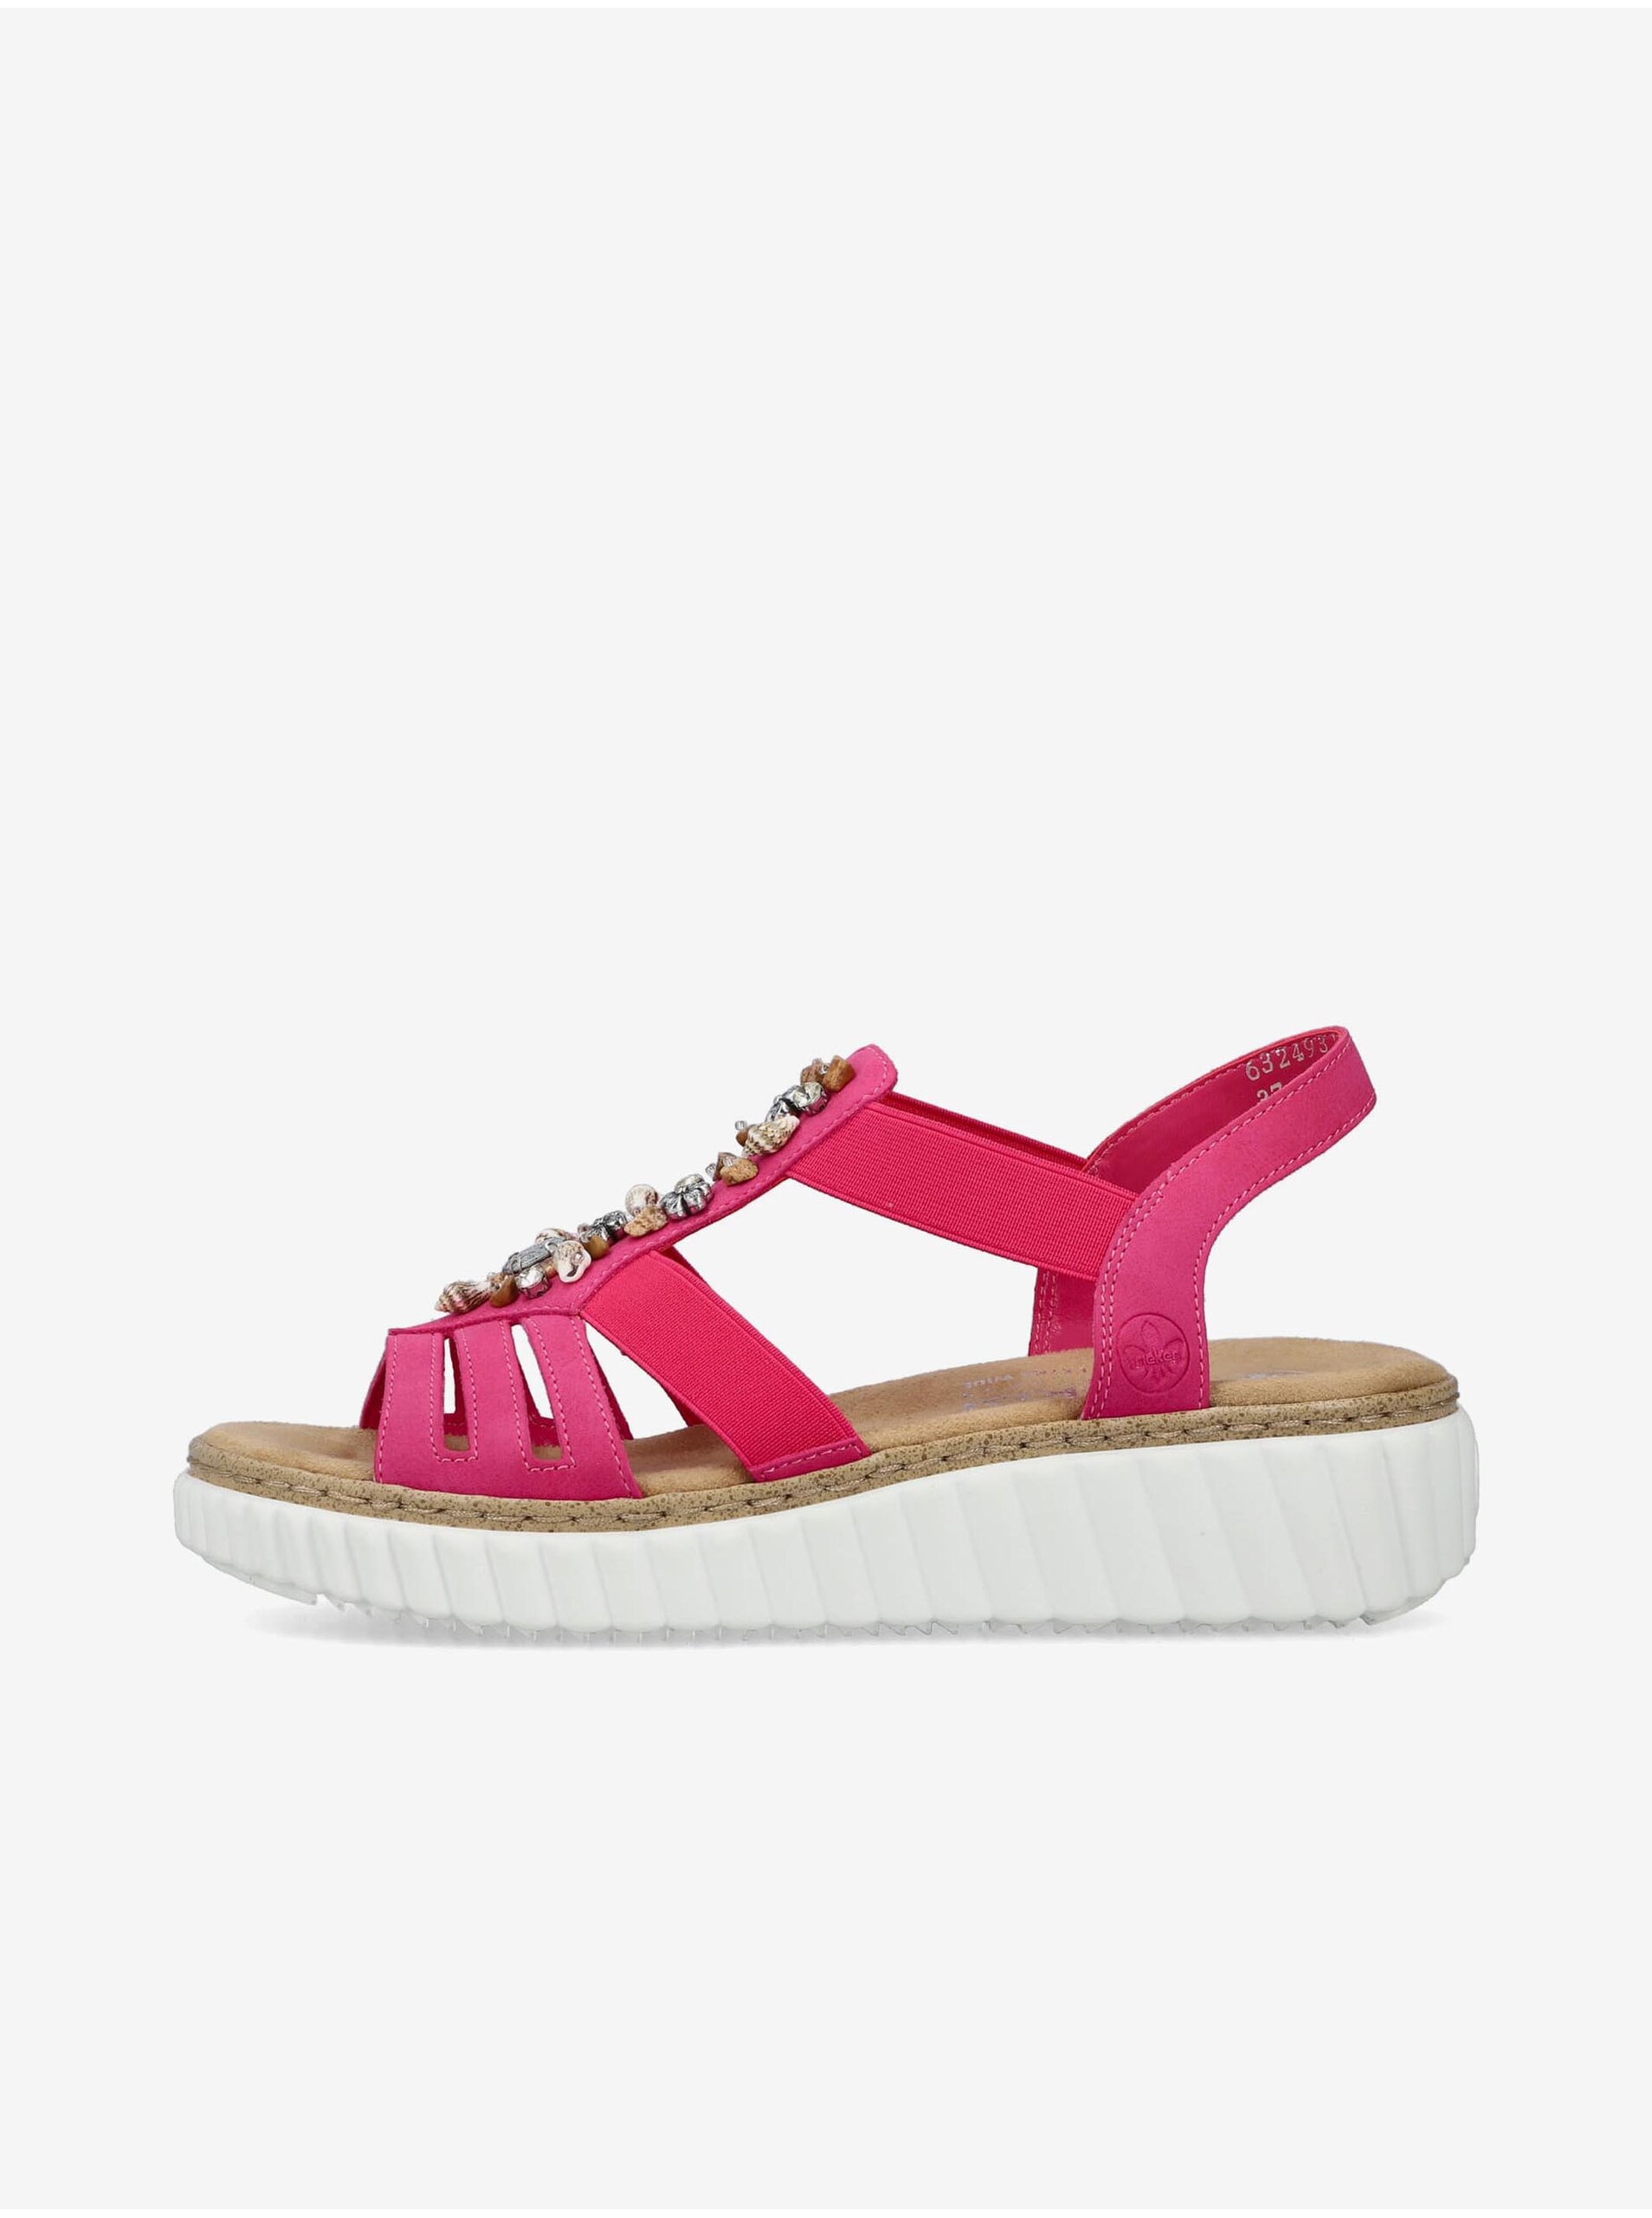 E-shop Tmavě růžové dámské sandálky Rieker